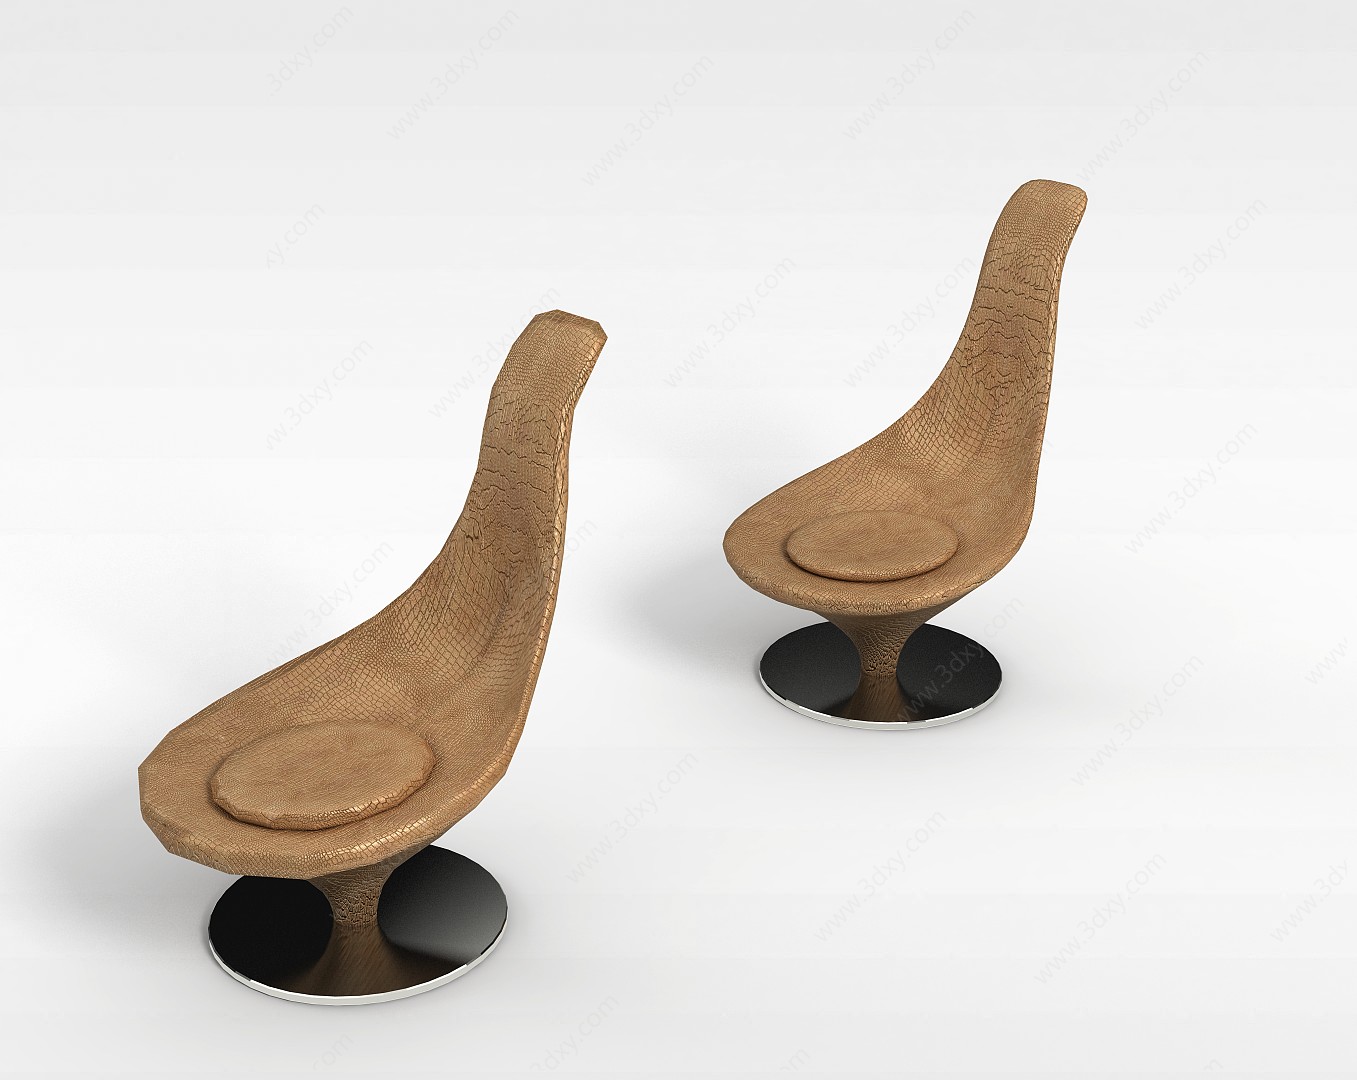 创意休闲椅3D模型